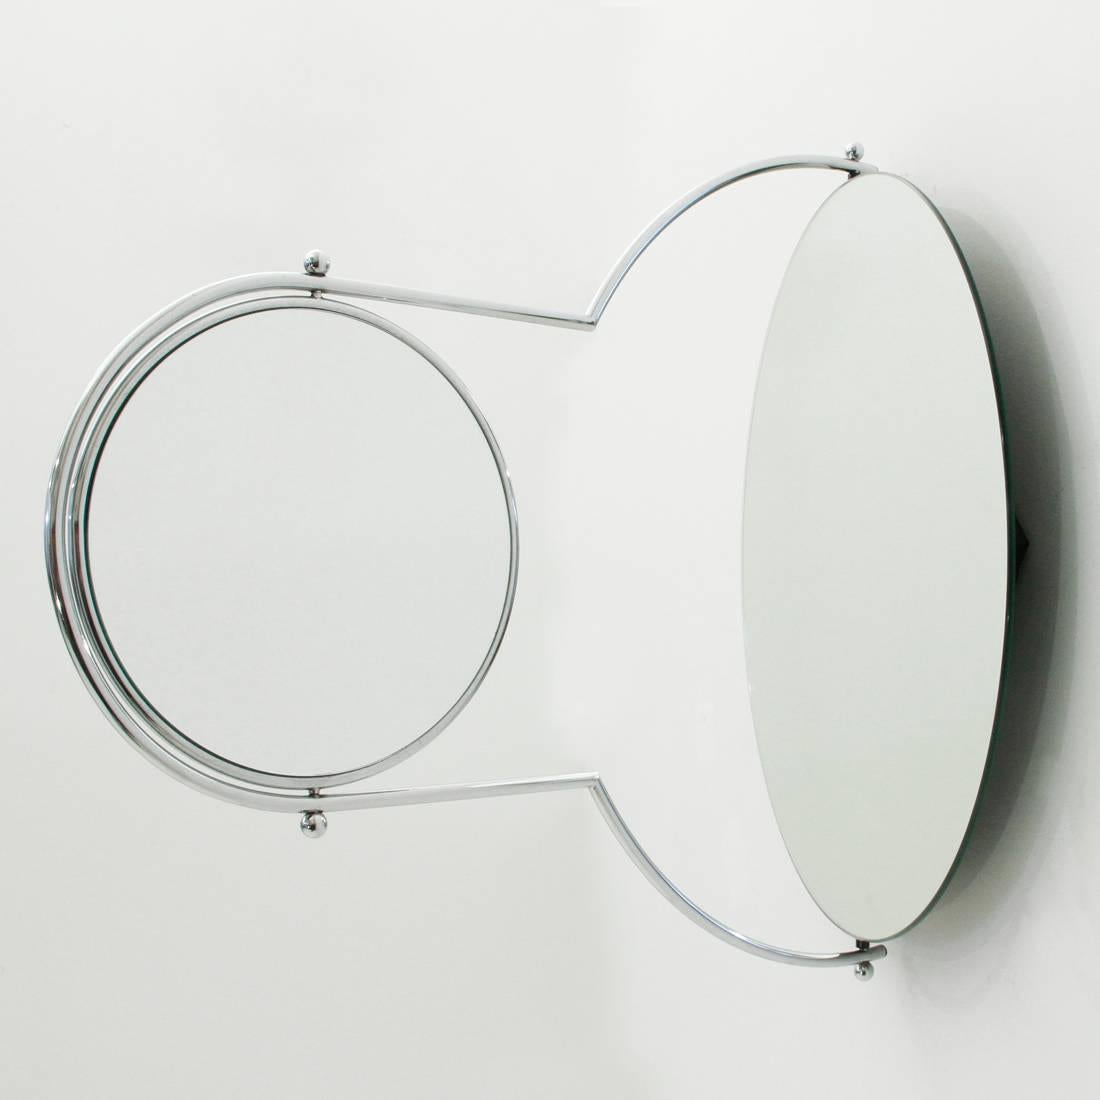 Italian Due Mirror by Rodney Kinsman for Bieffeplast, 1980s